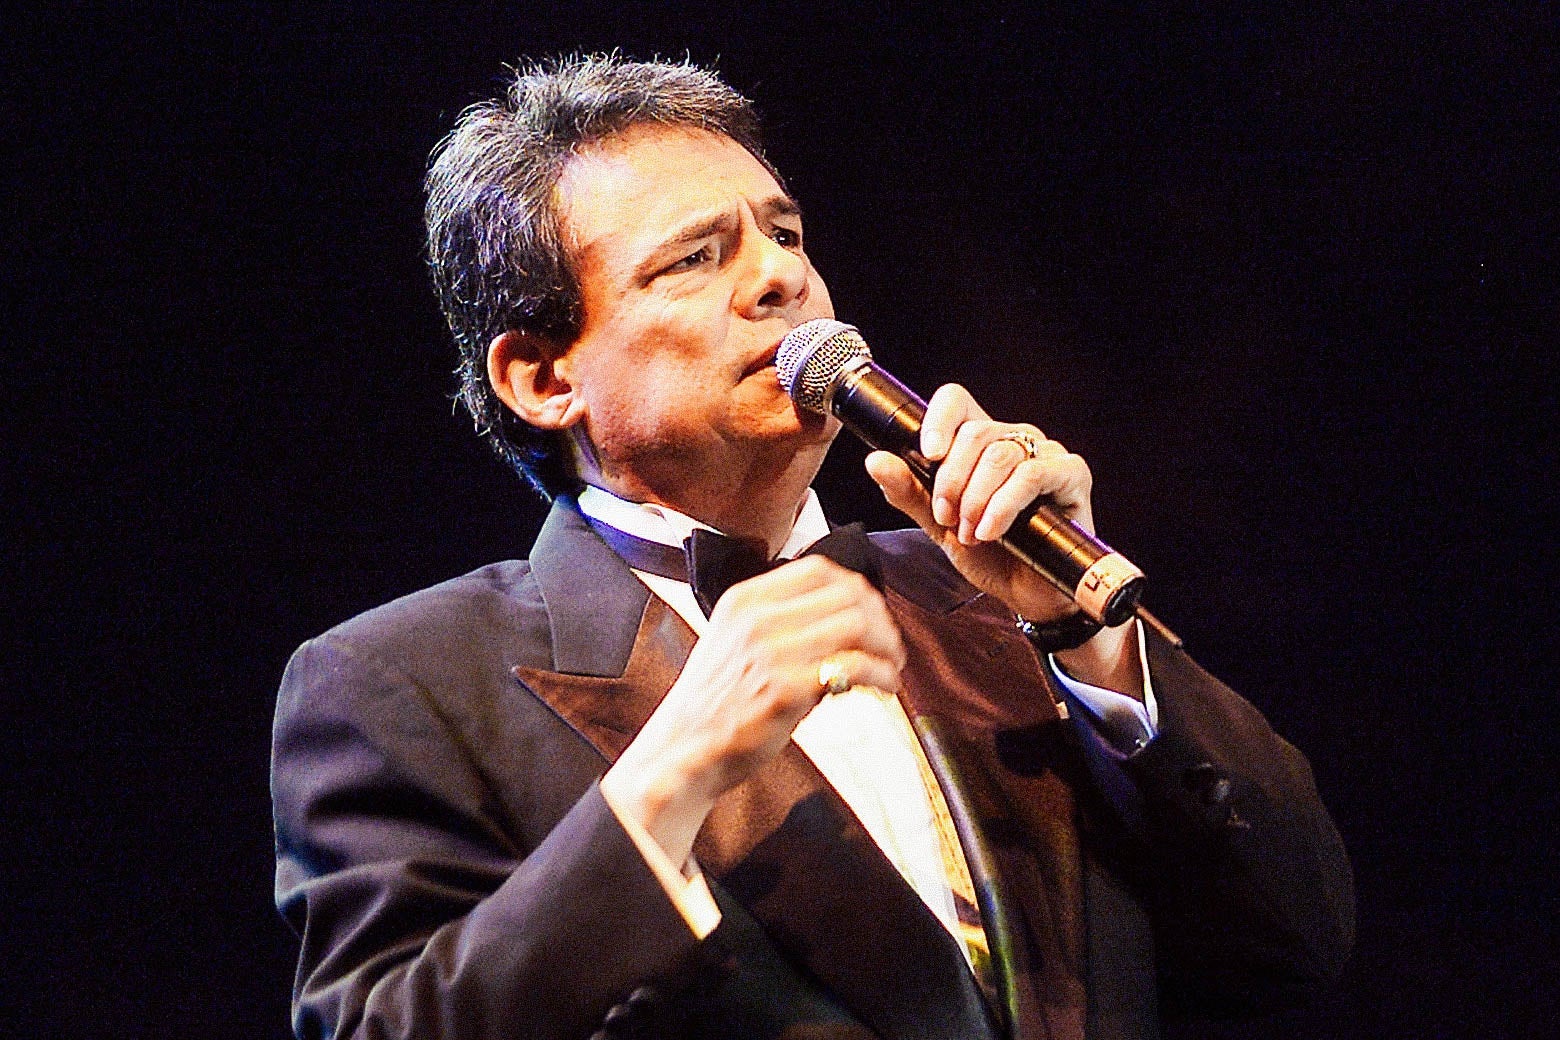 José José singing